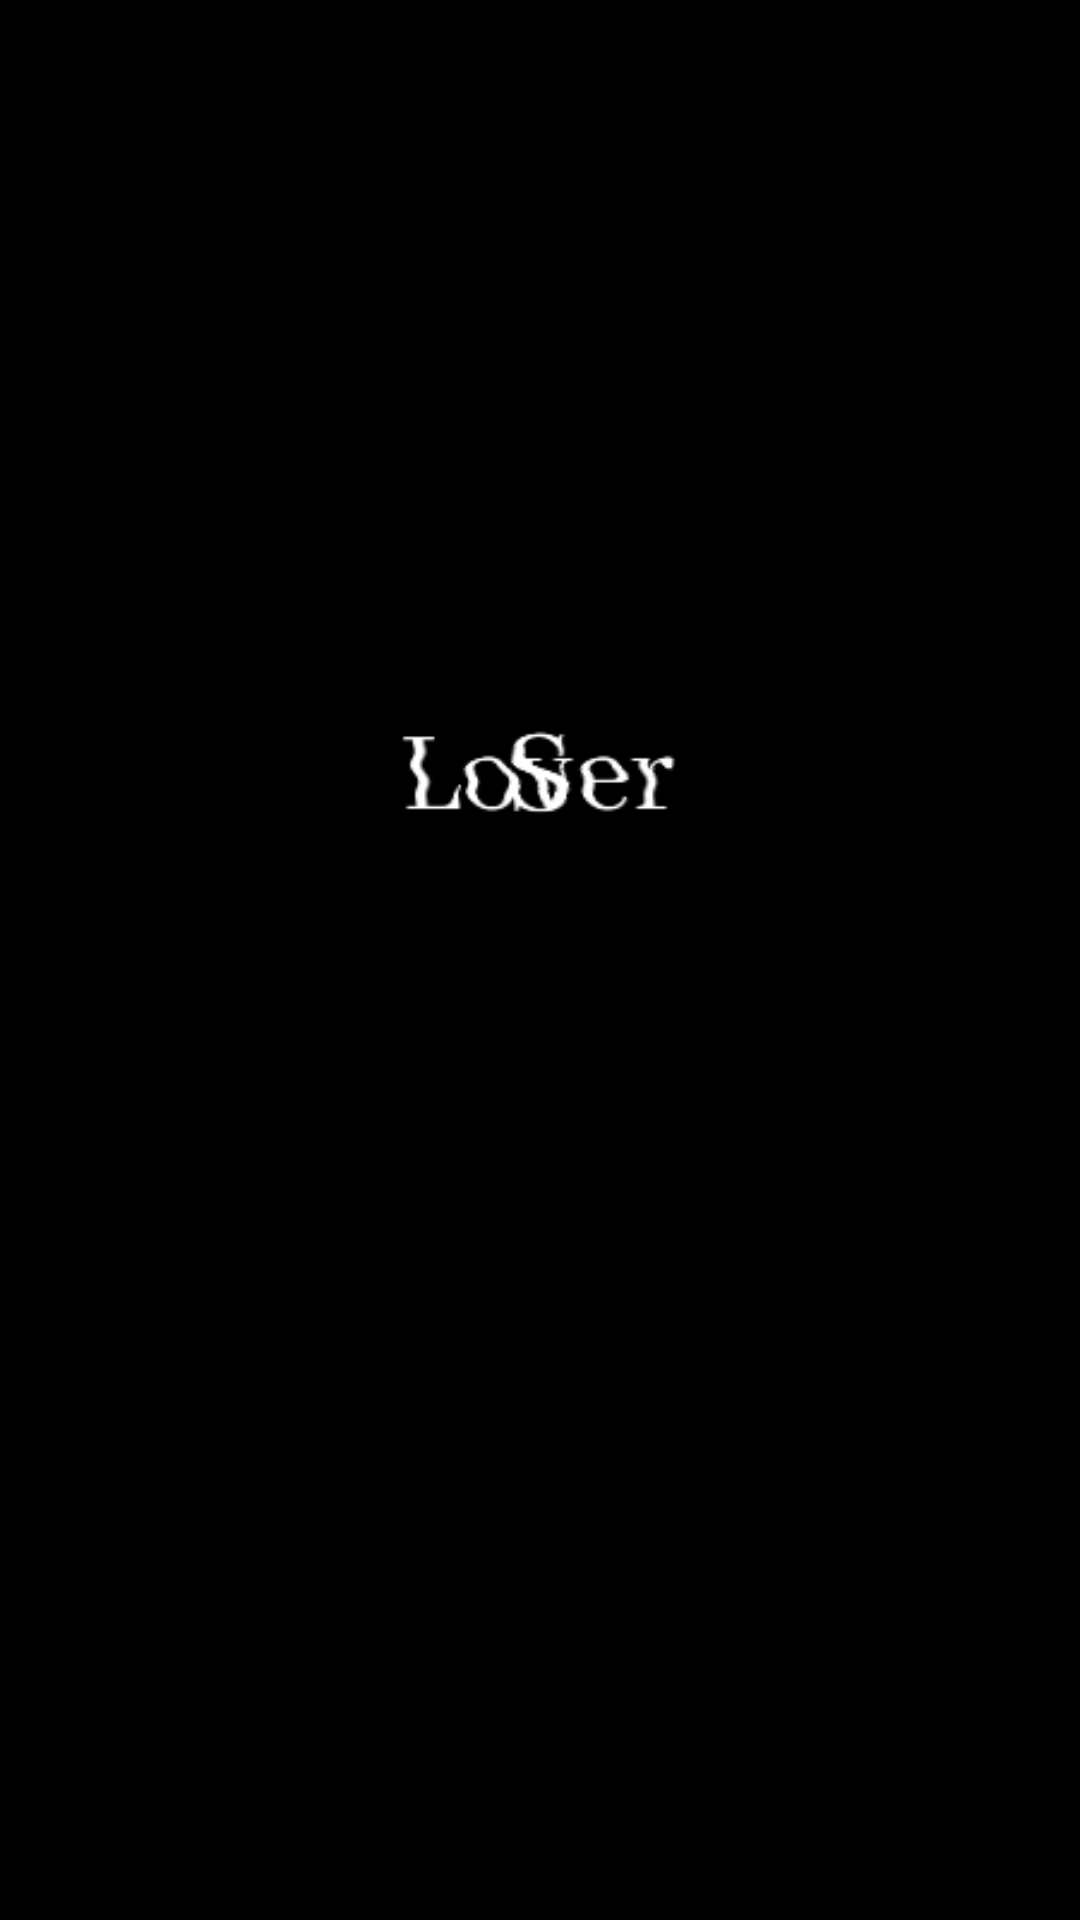 Loser | Depressing Phone Wallpapers